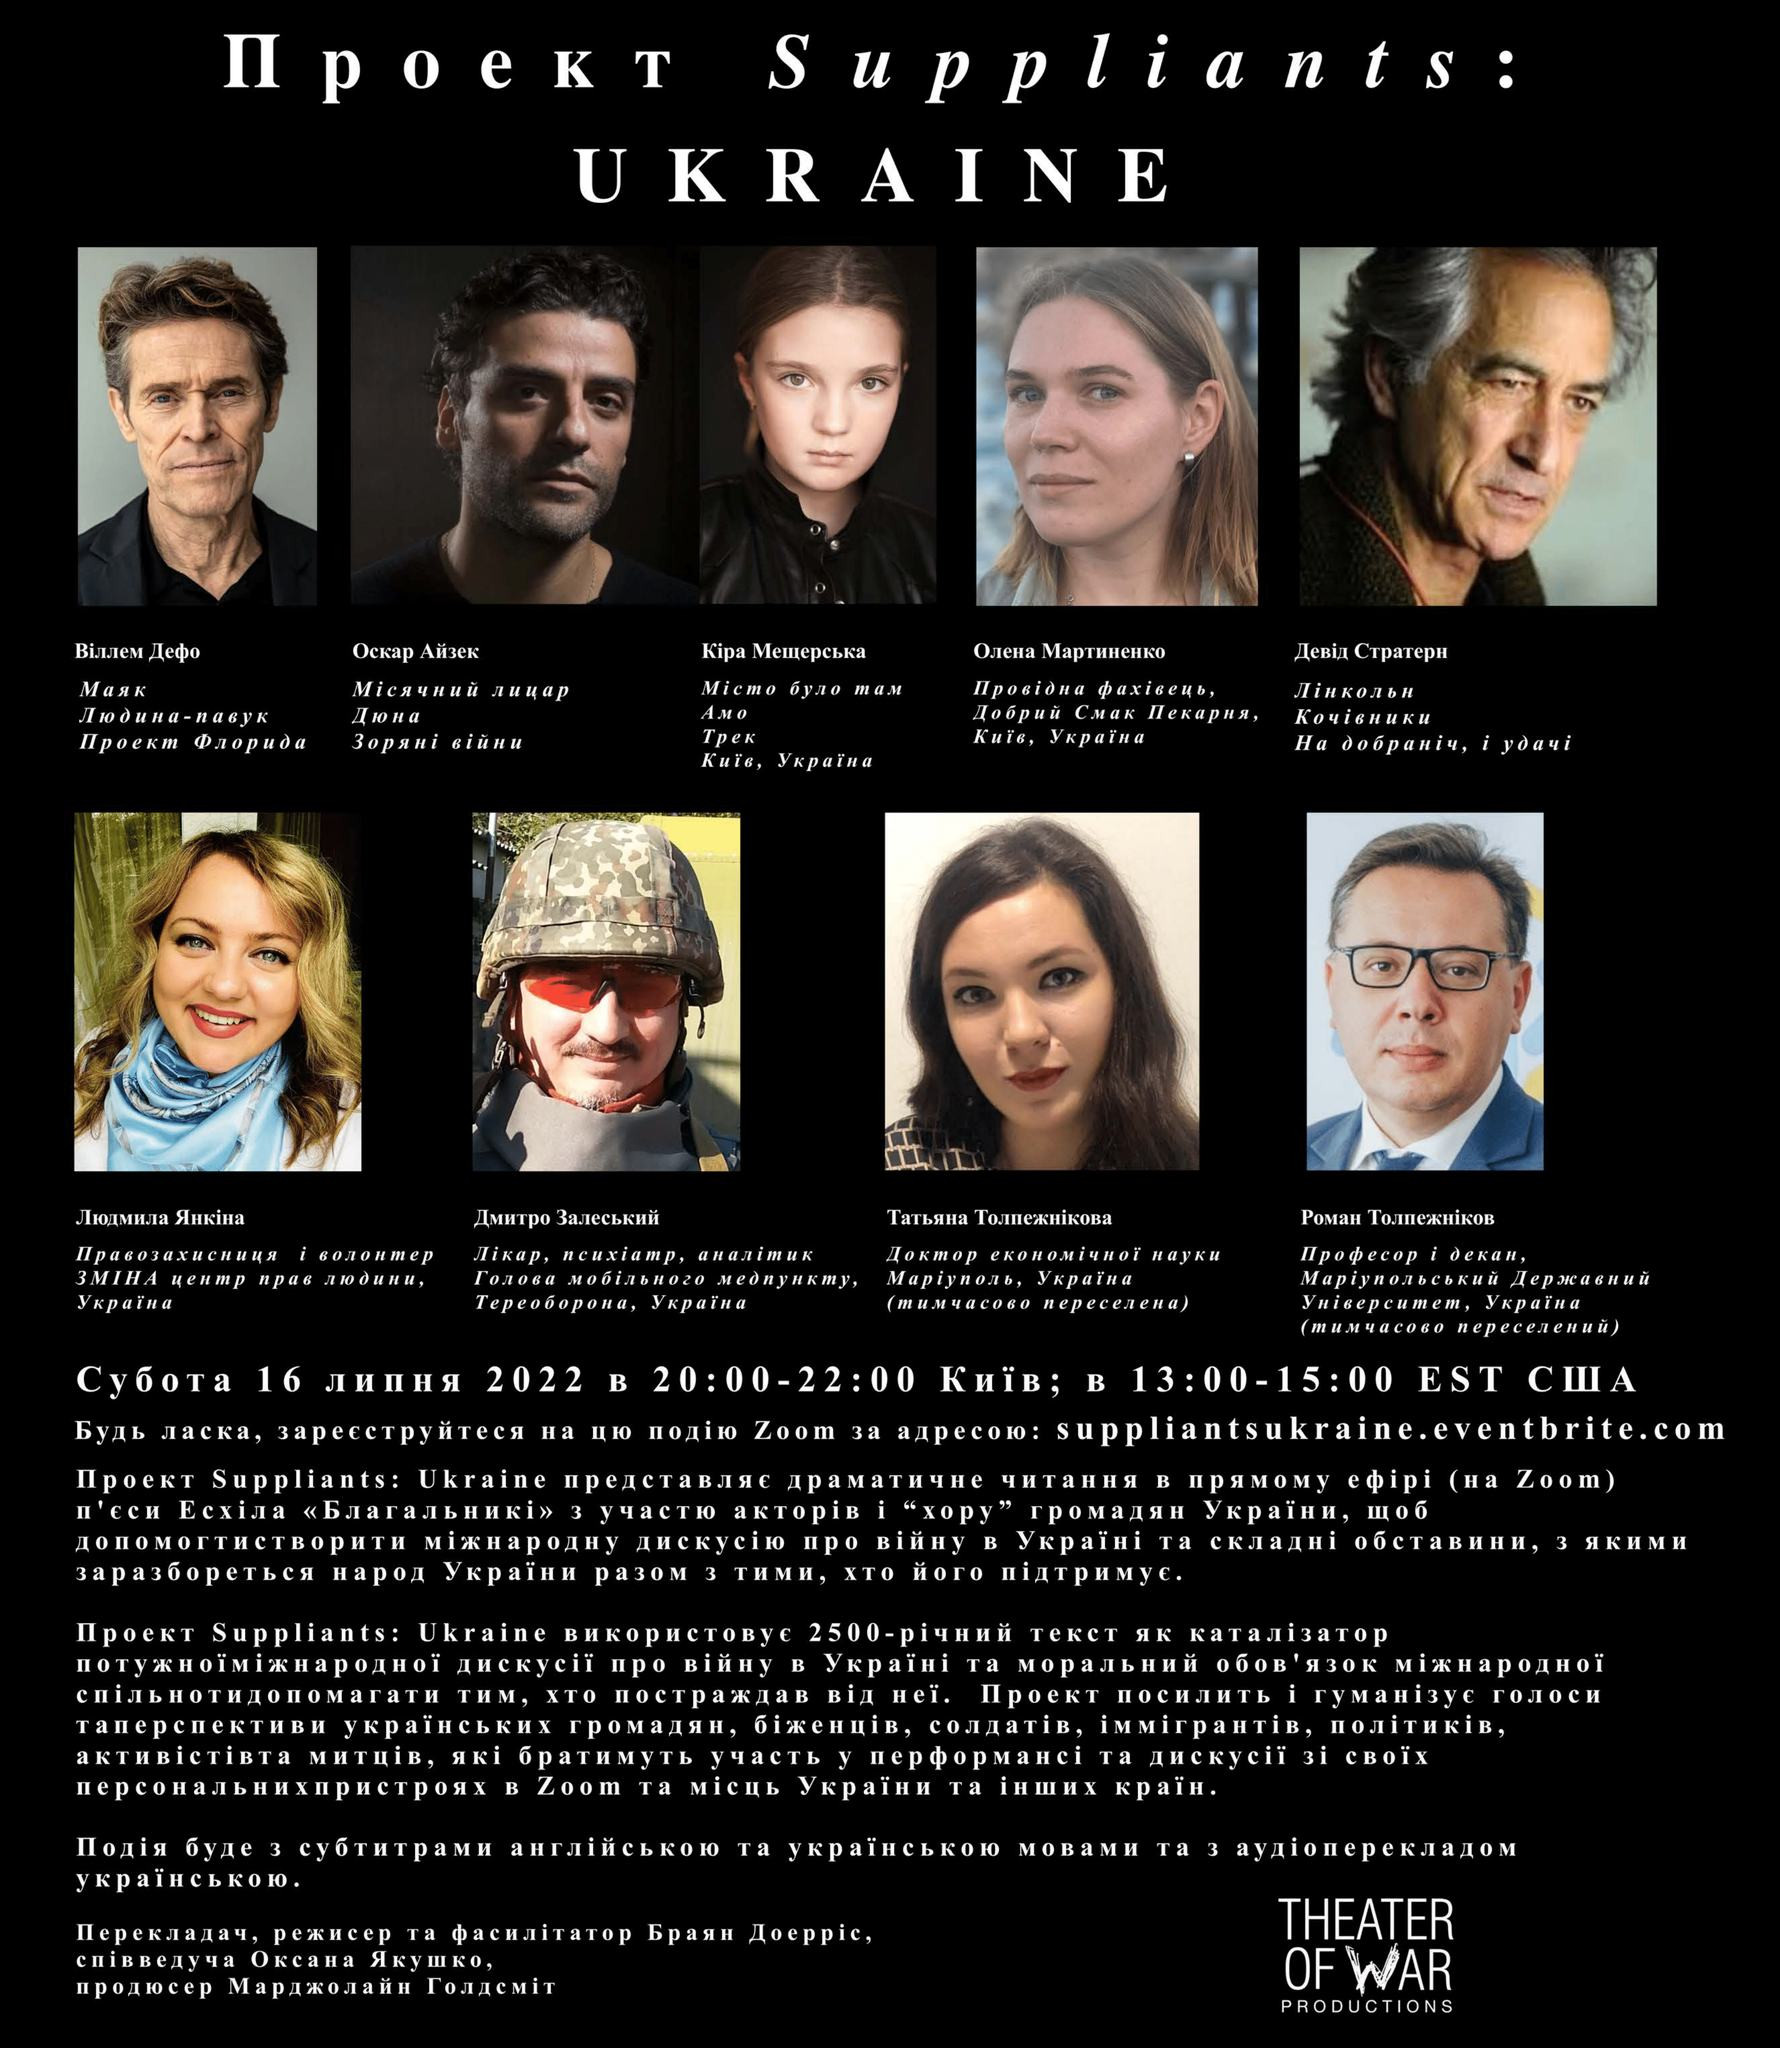 Theater of War Productions нагадає світові про війну в Україні як глобальну трагедію - зображення